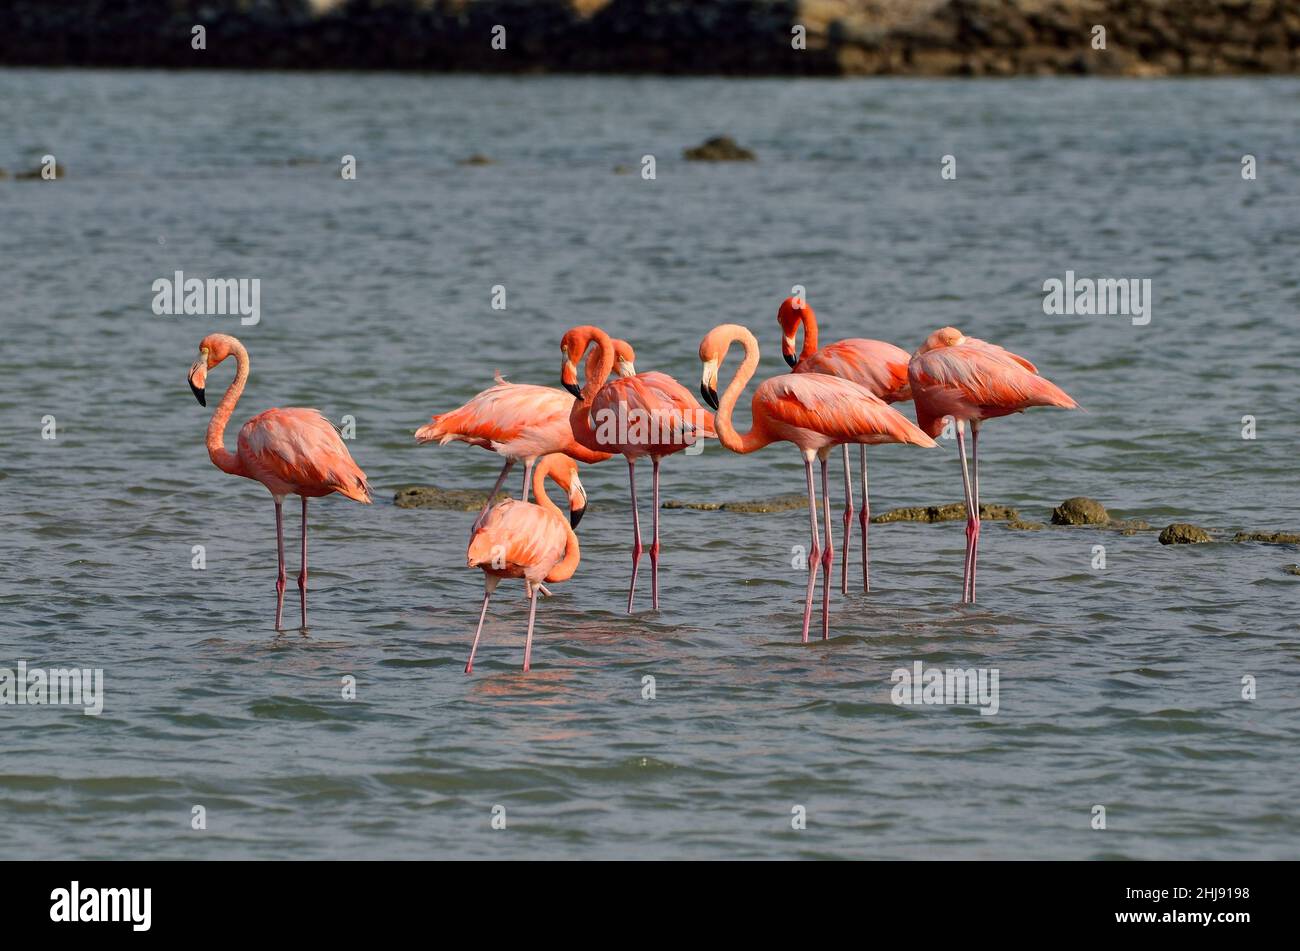 Kuba-Flamingo, Karibik-Flamingo, Flamingo caribeño, Flamingo americano, Phoenicopterus ruber, Jan Kok Saline, Sint Willibrordus, Curacao Foto de stock